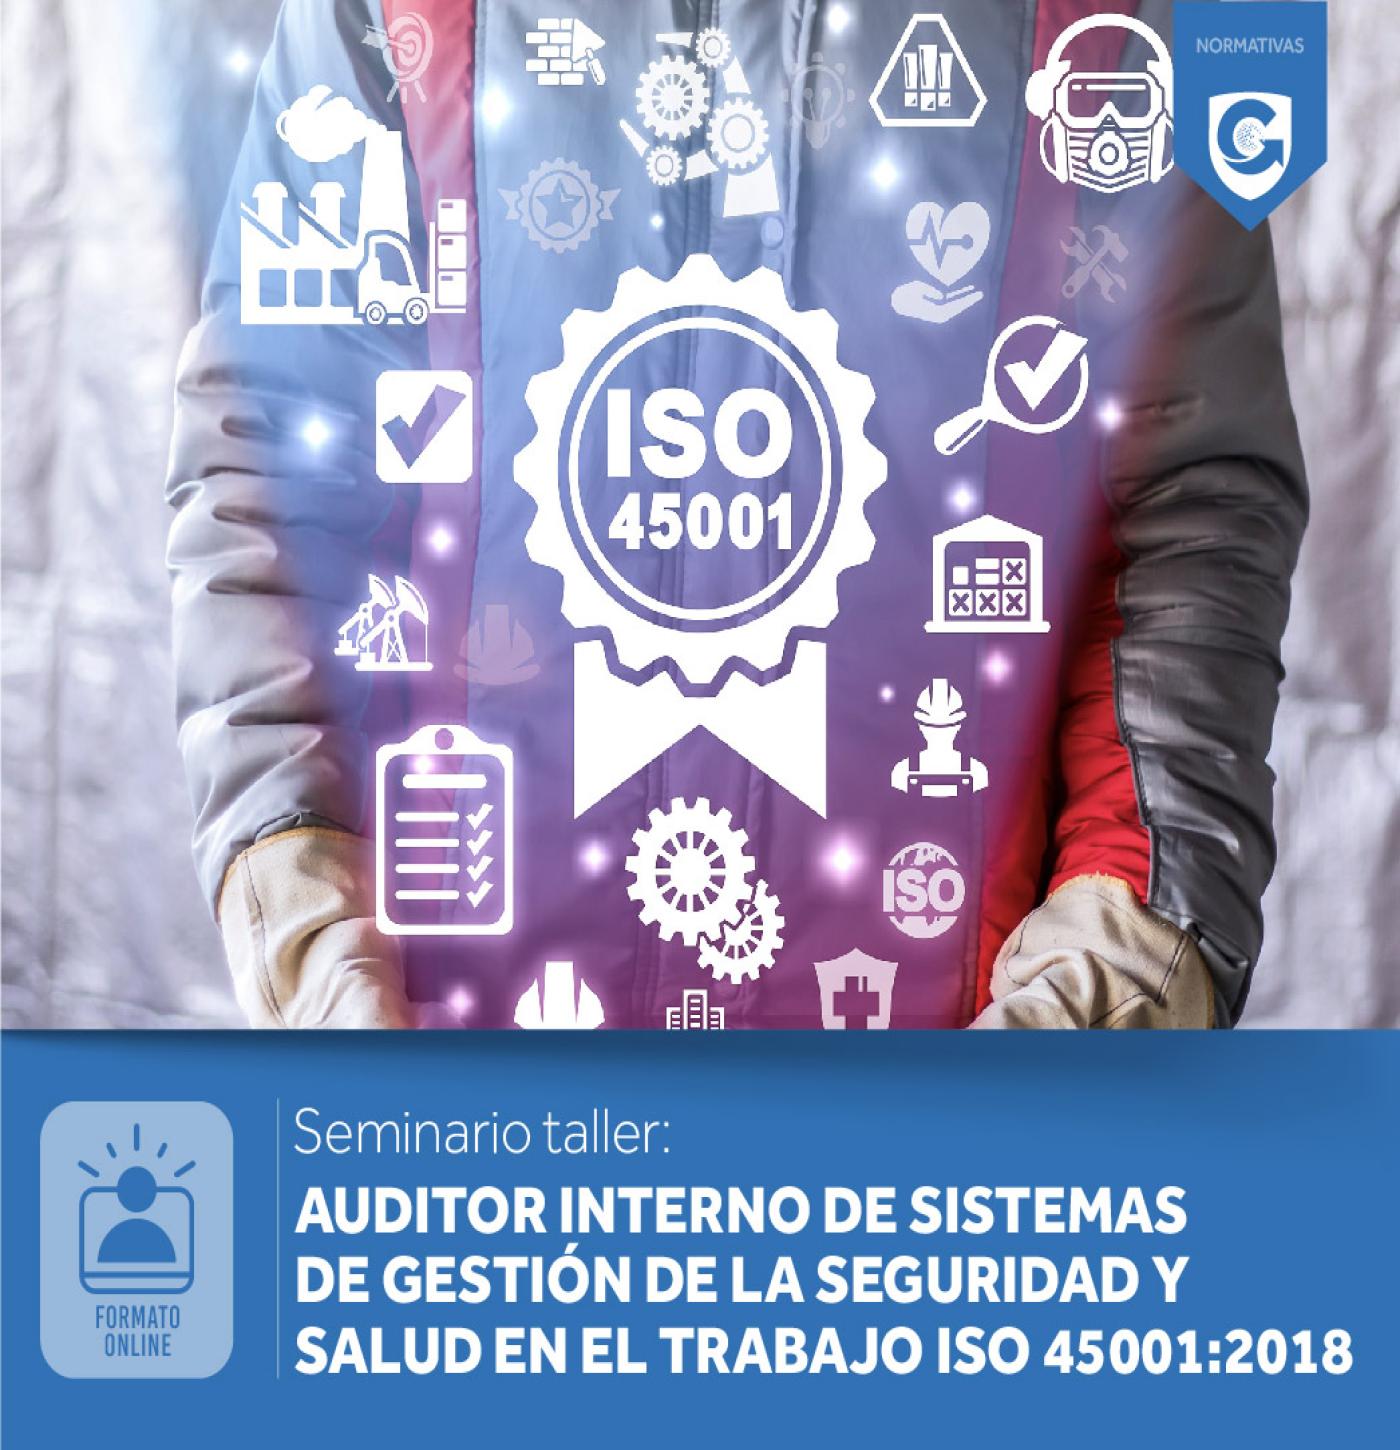 AUDITOR INTERNO DE SISTEMAS DE GESTIÓN DE LA SEGURIDAD Y SALUD EN EL TRABAJO ISO 45001:2018